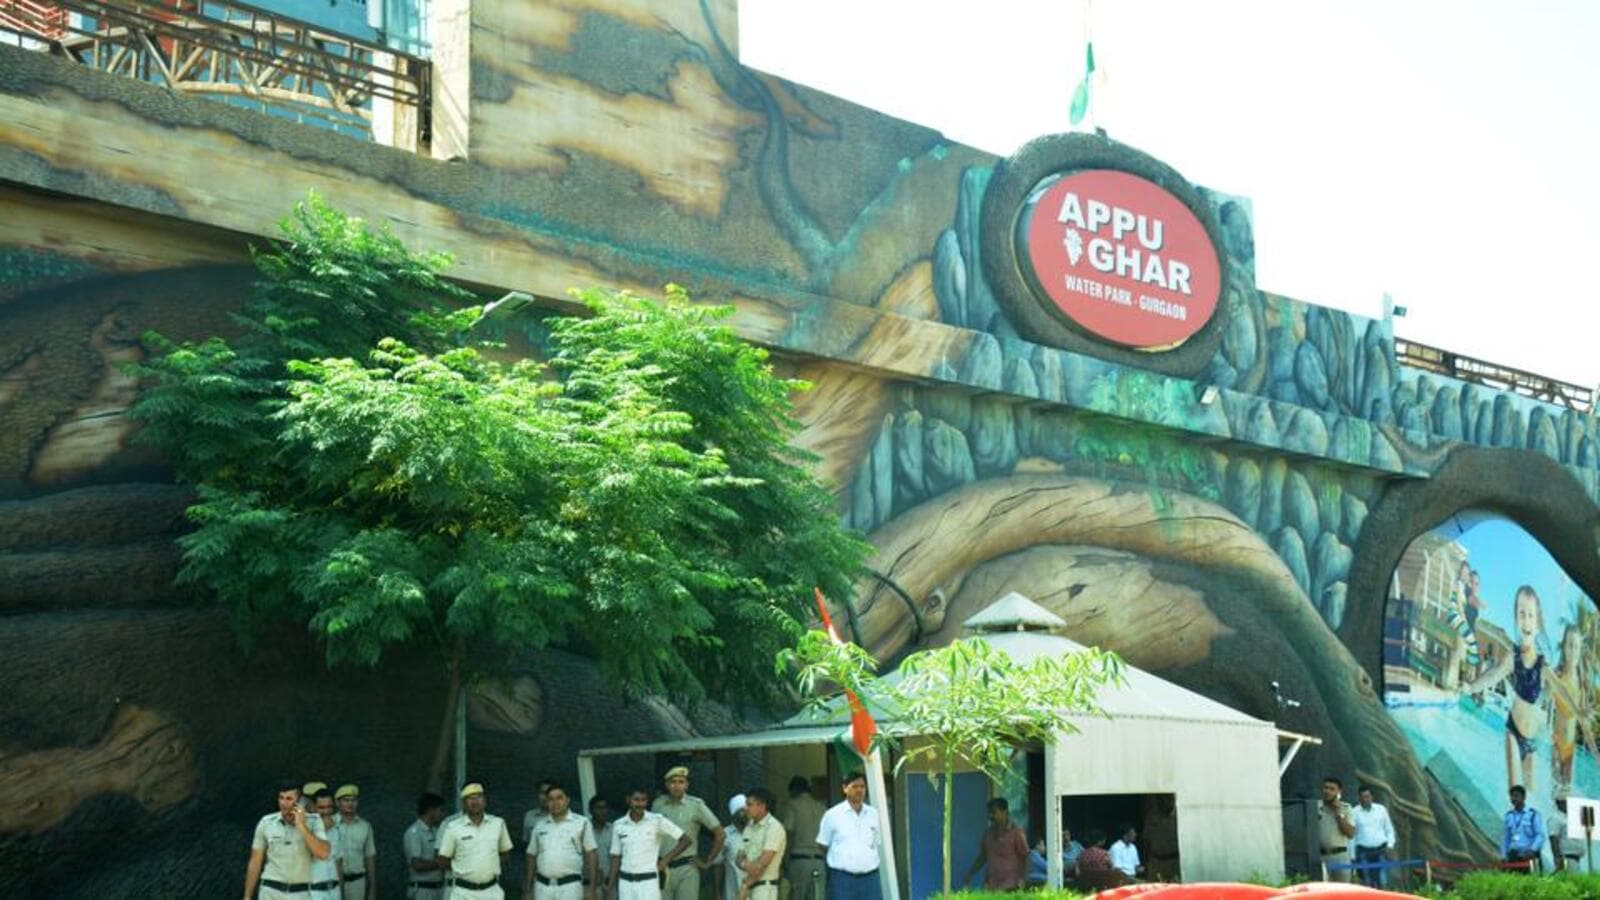 Gurugram's Appu Ghar park sealed over unpaid dues - Hindustan Times